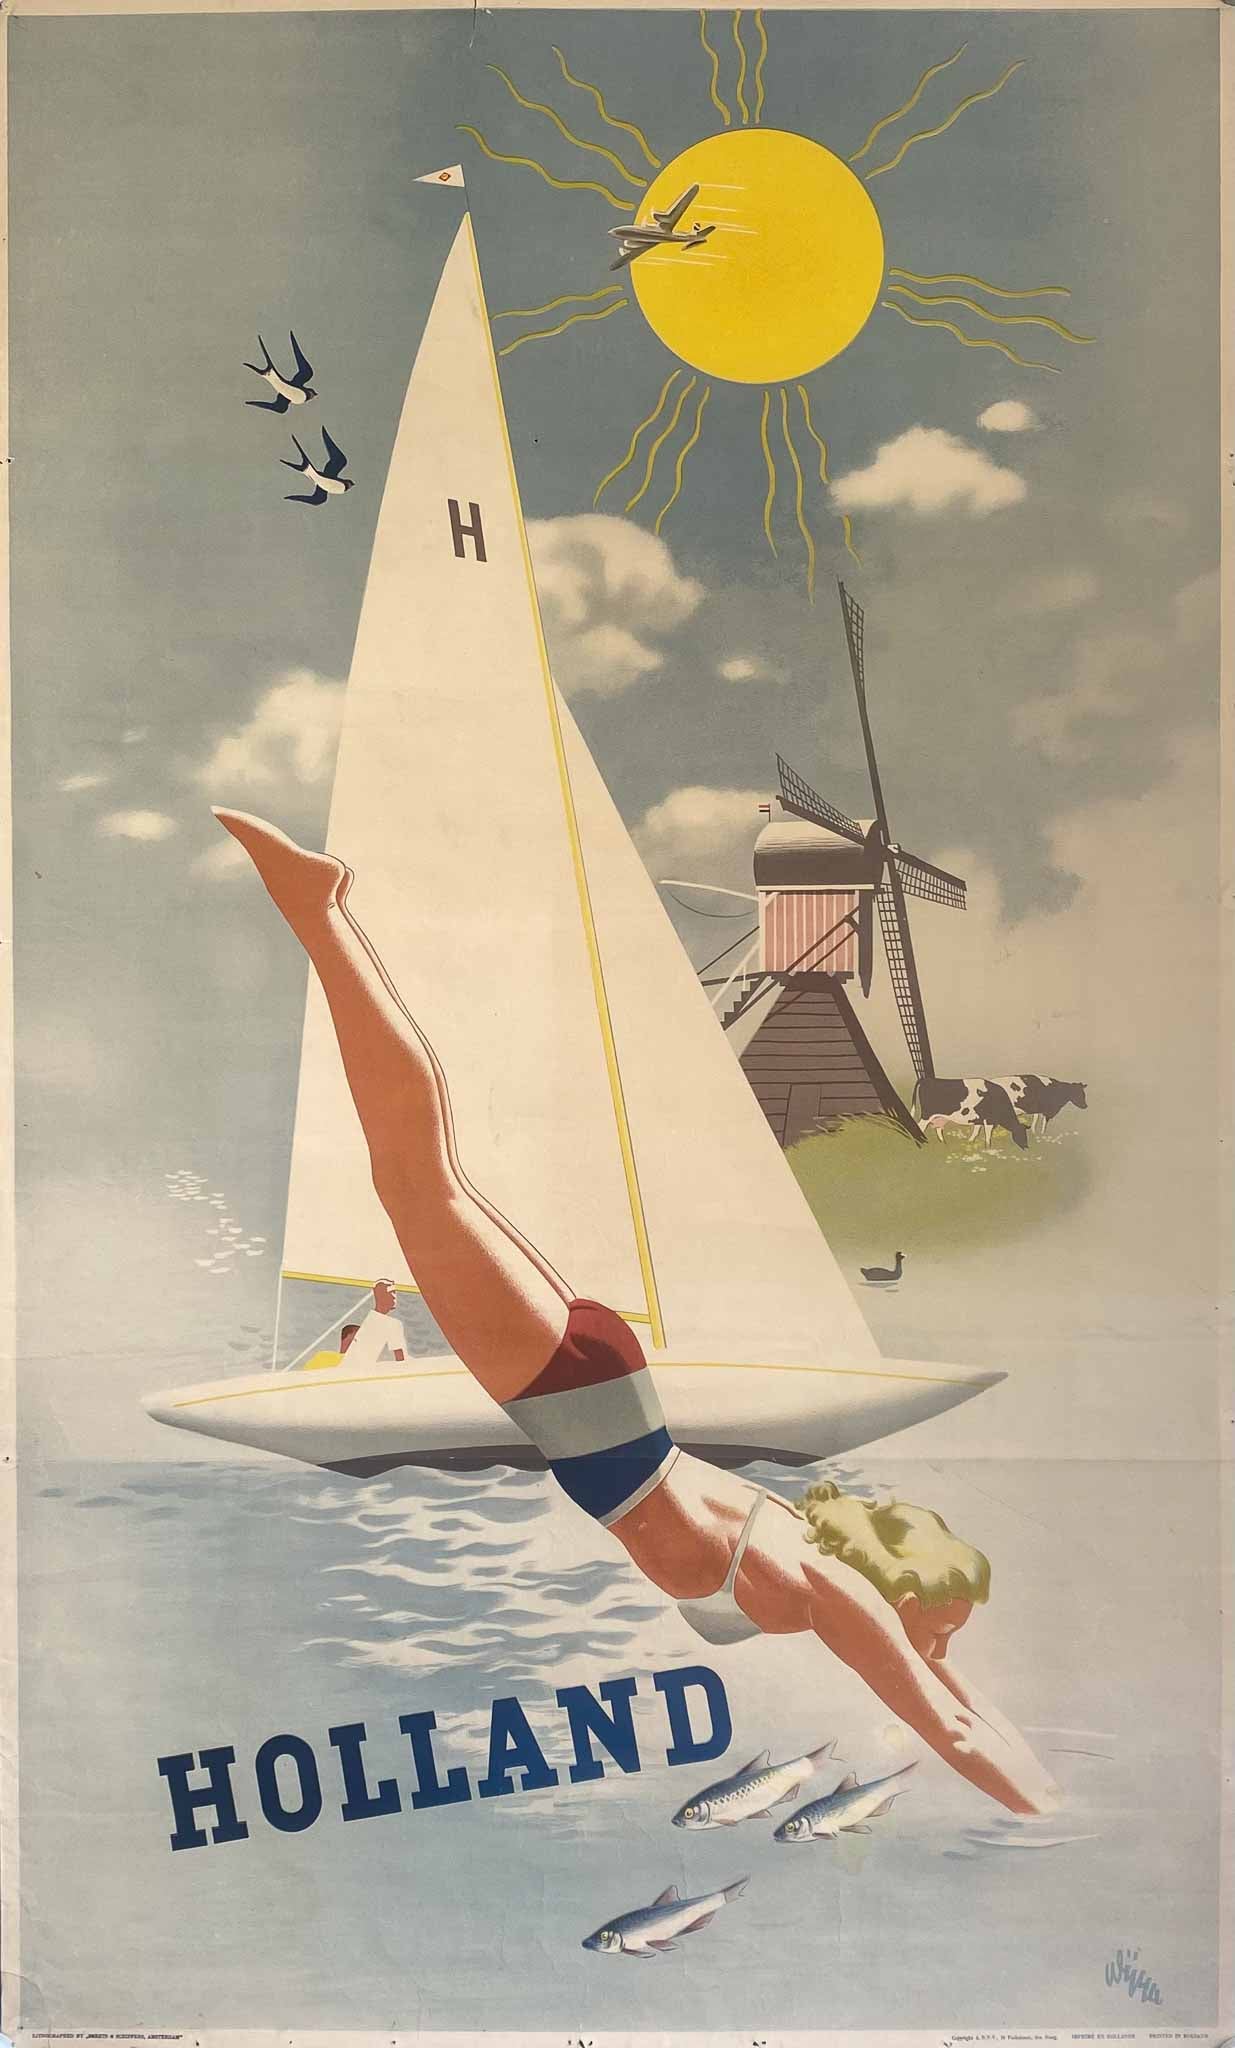 Affiche Holland Voilier & Plongeuse  par Wüma, 1950